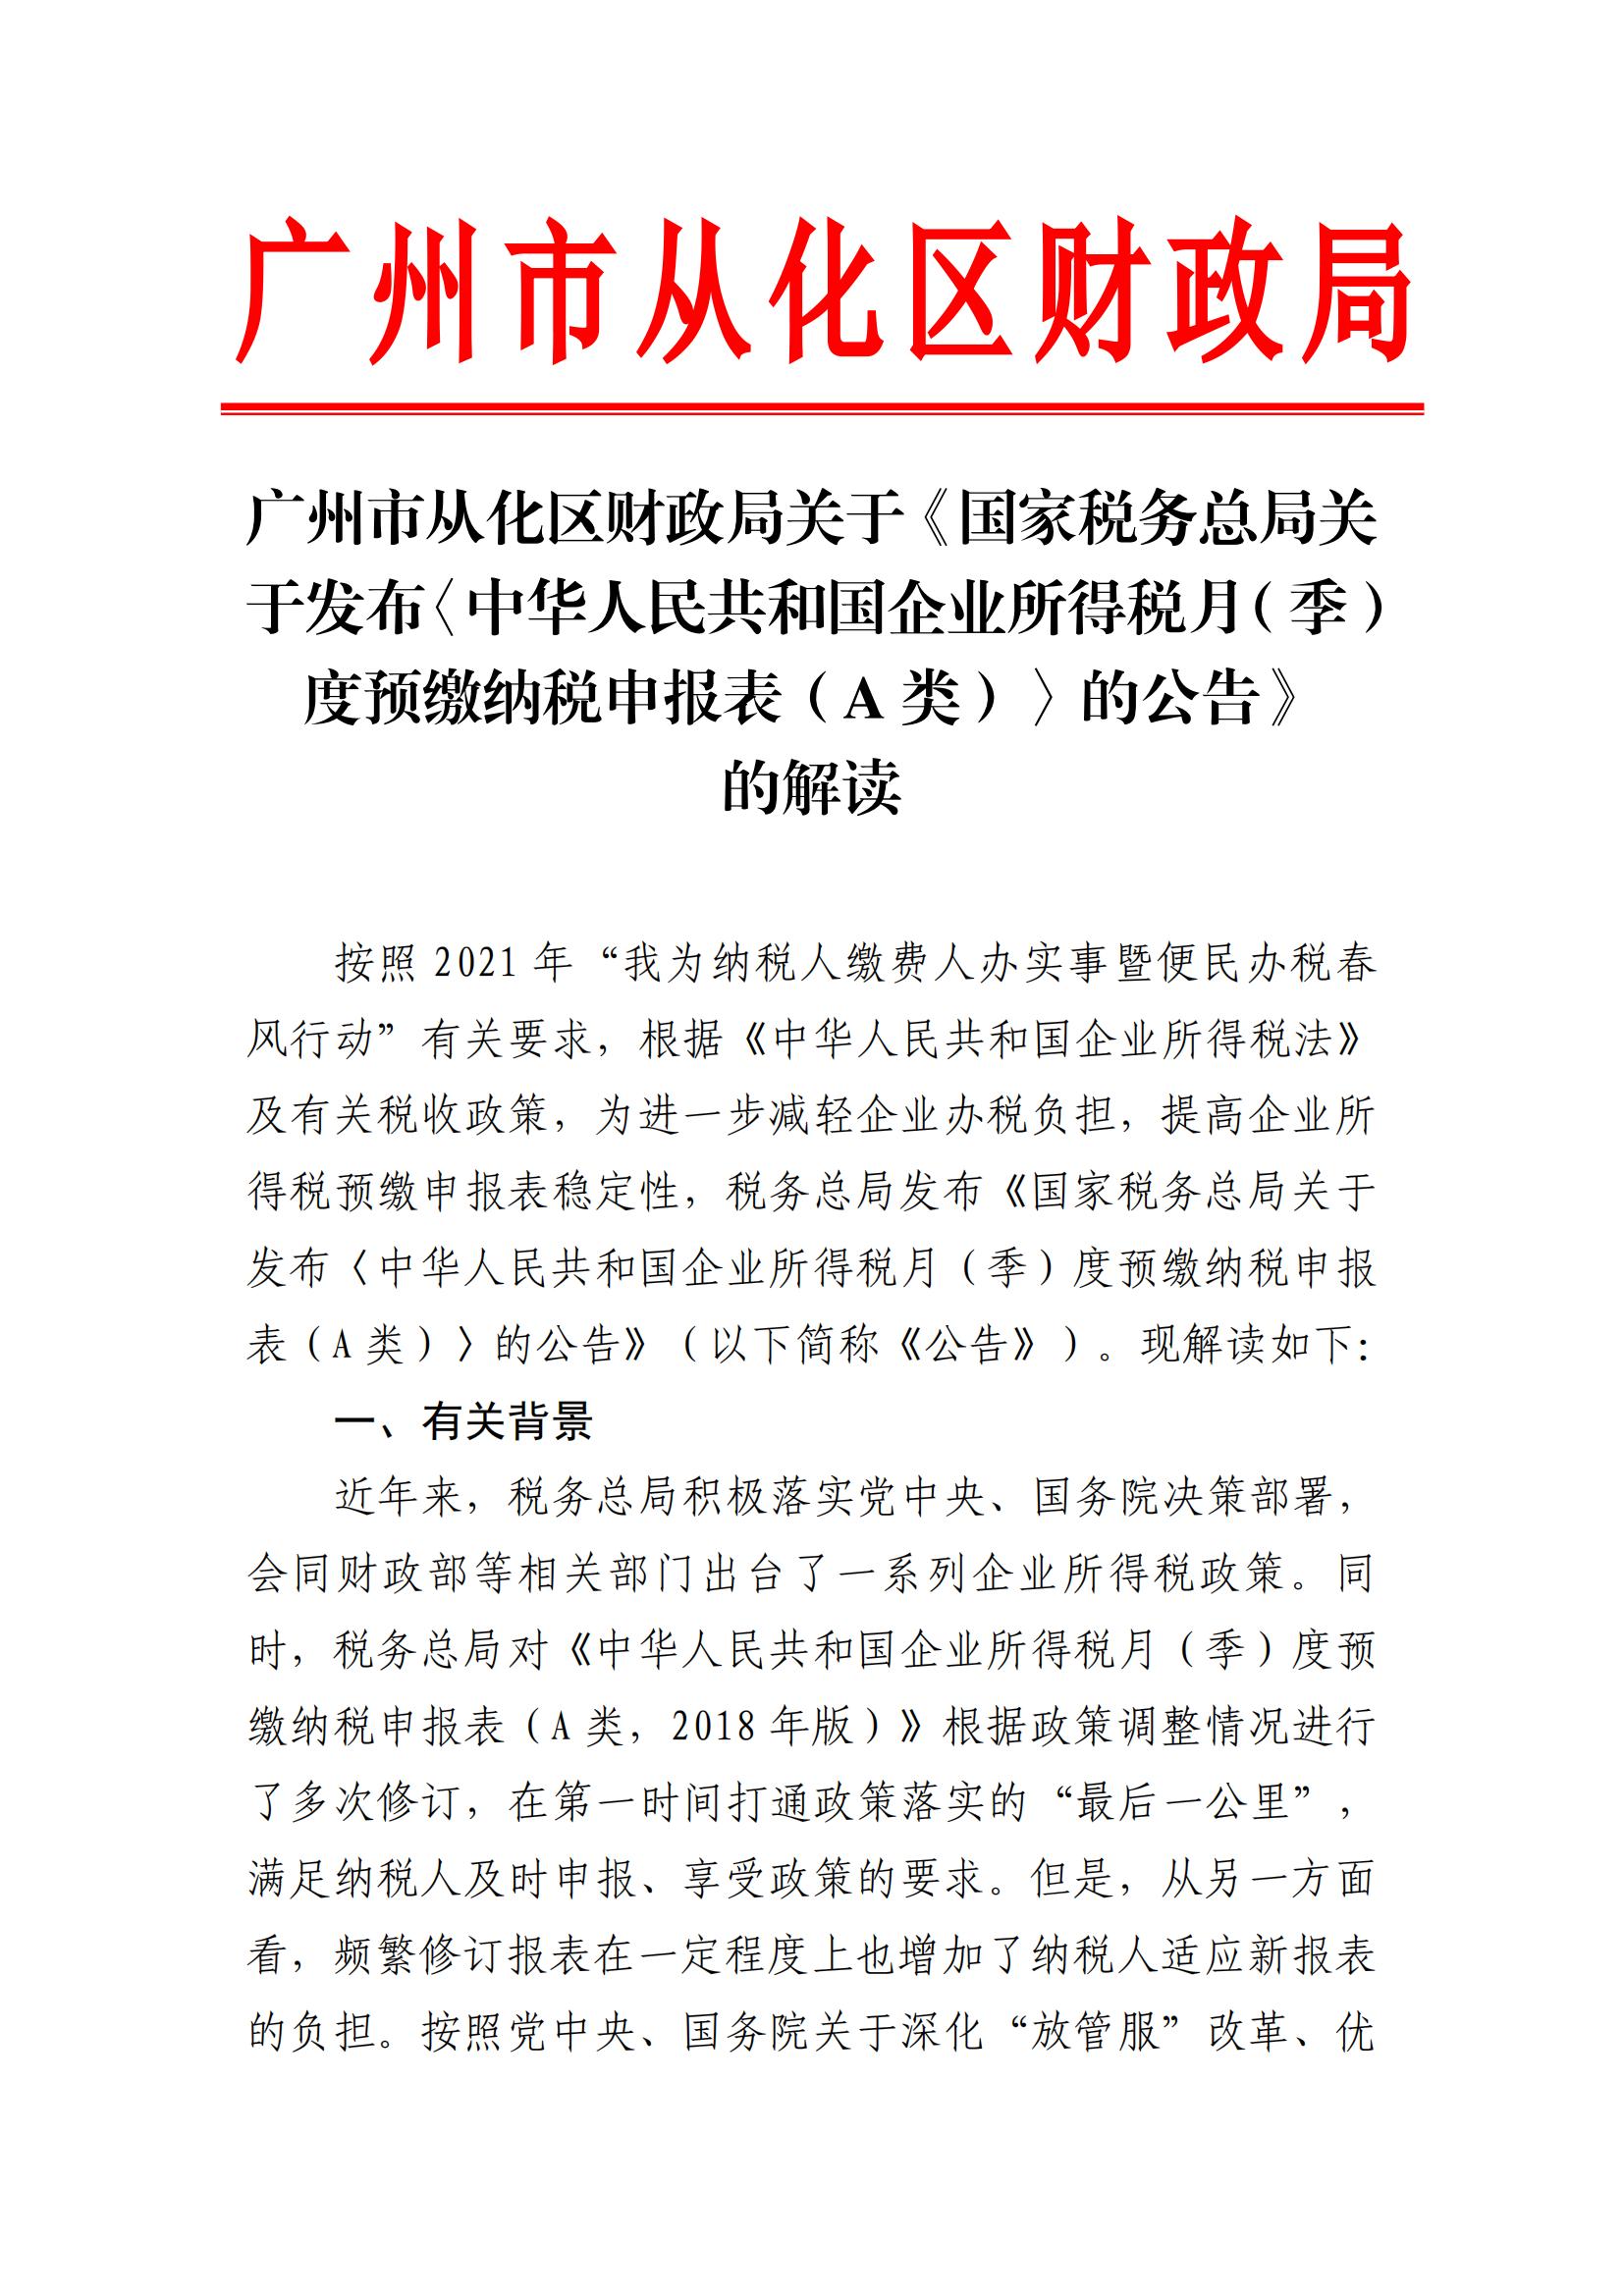 广州市从化区财政局关于《国家税务总局关于发布〈中华人民共和国企业所得税月（季）度预缴纳税申报表（A类）〉的公告》的解读_00.jpg